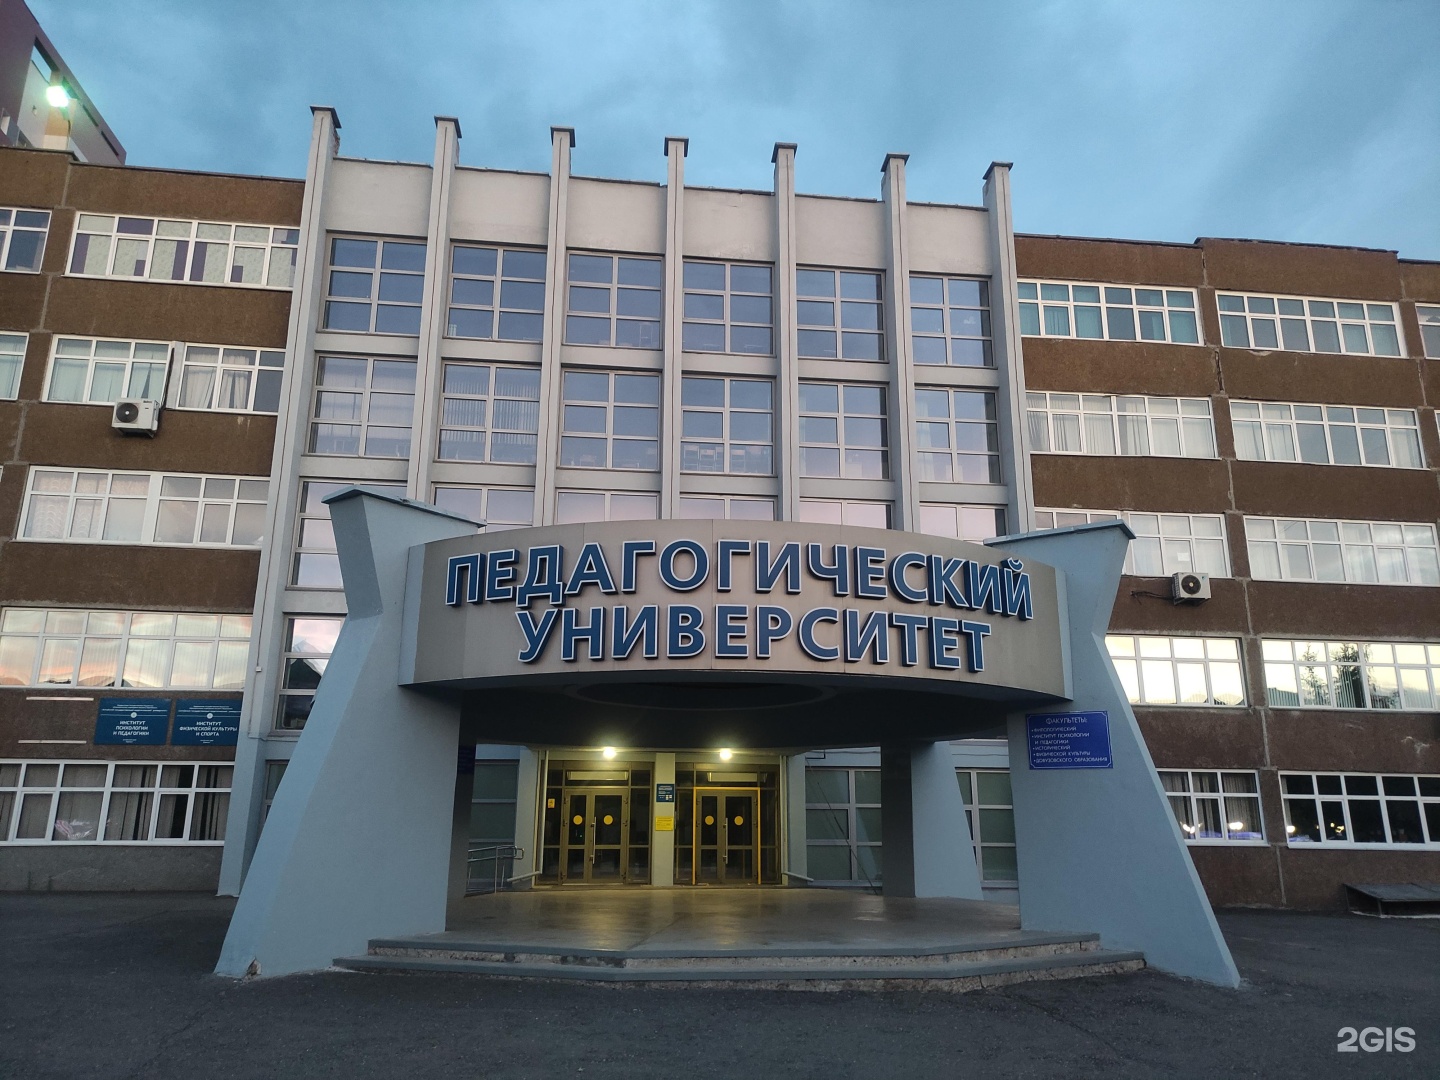 Алтайский педагогический университет сайт